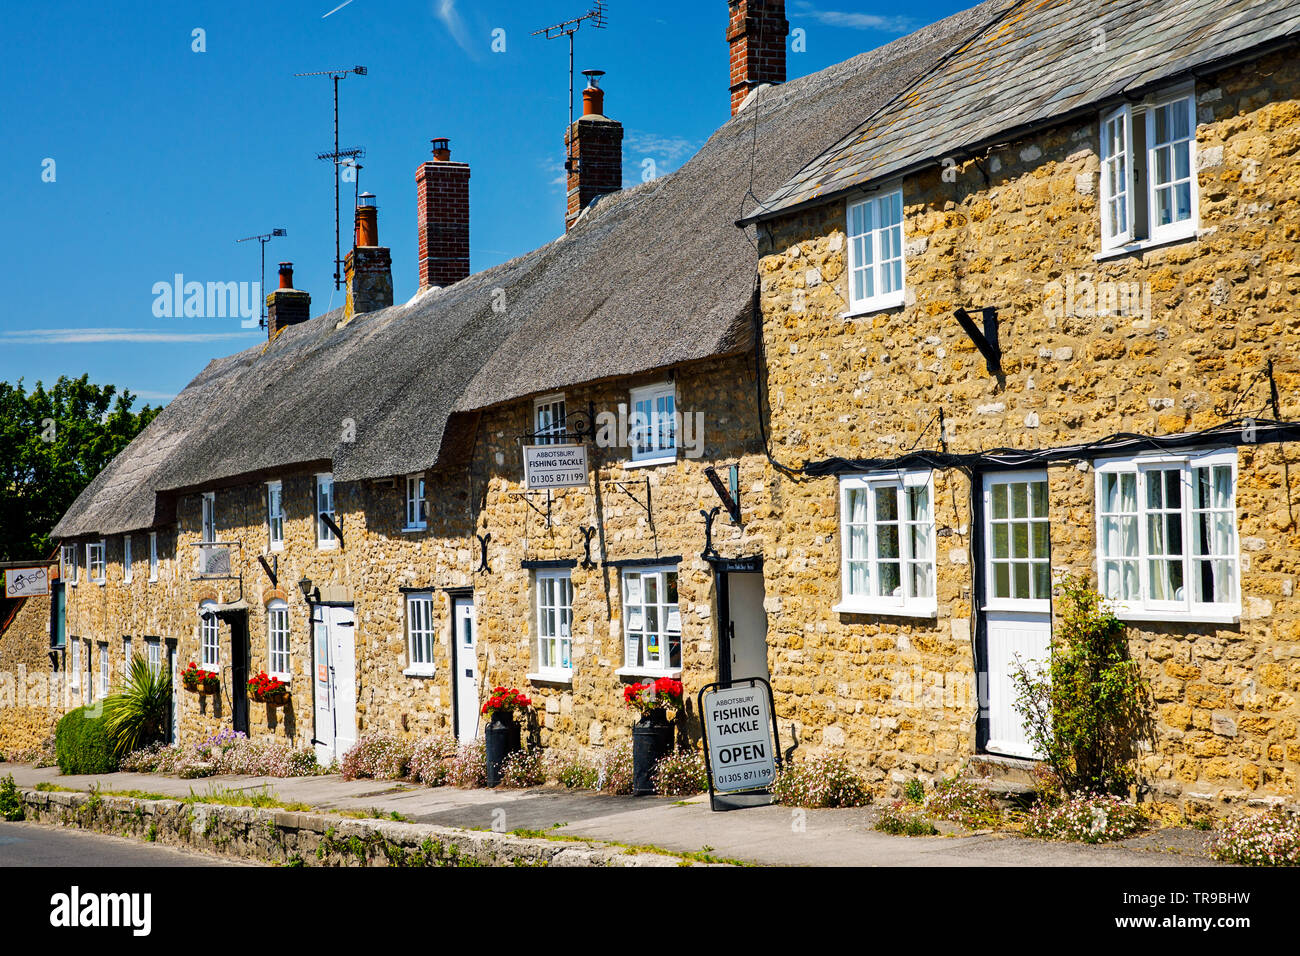 ABBOTSBURY, Regno Unito - Maggio 22th, 2019: Il villaggio di Abbotsbury comprende una lunga strada di case di pietra, molti dei quali sono con il tetto di paglia, con alcuni risalenti dal Foto Stock